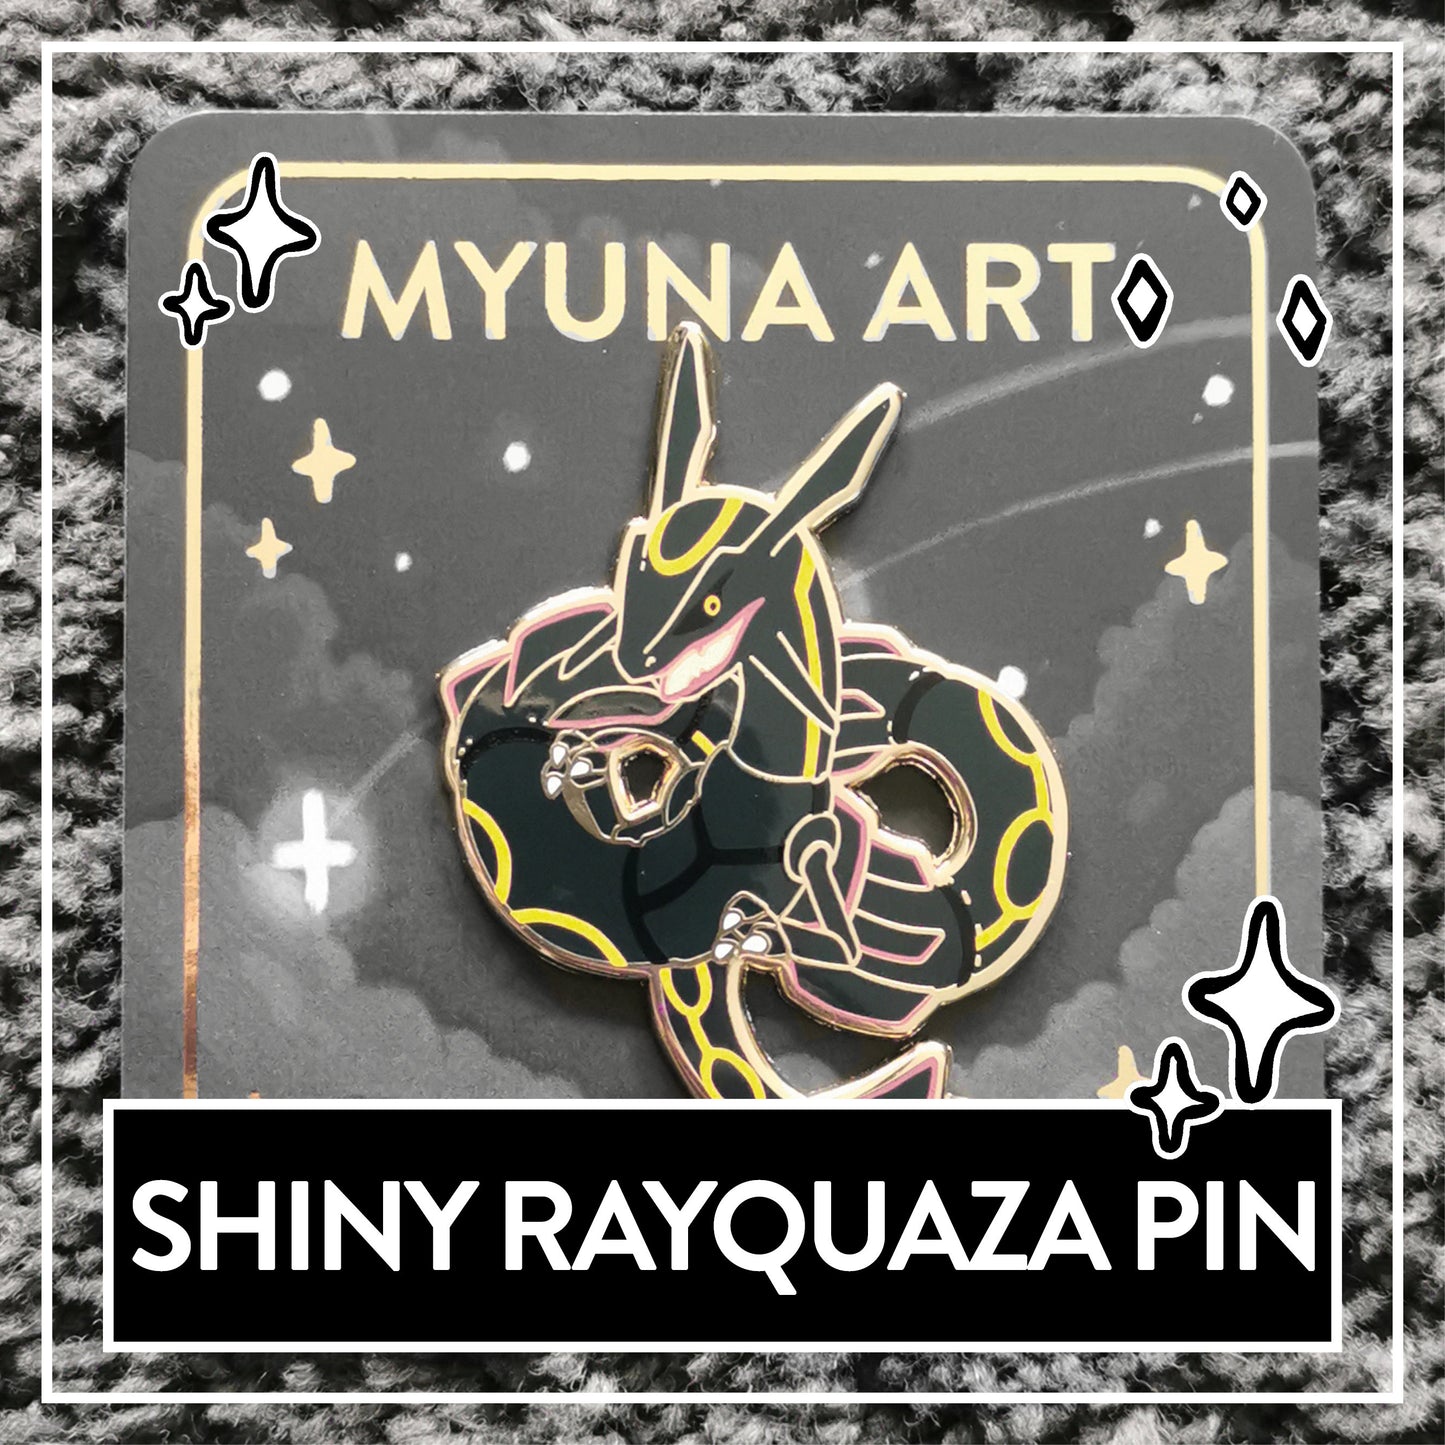 Myuna's XXL Shiny Mega Rayquaza Pin Big Fanart Sky 